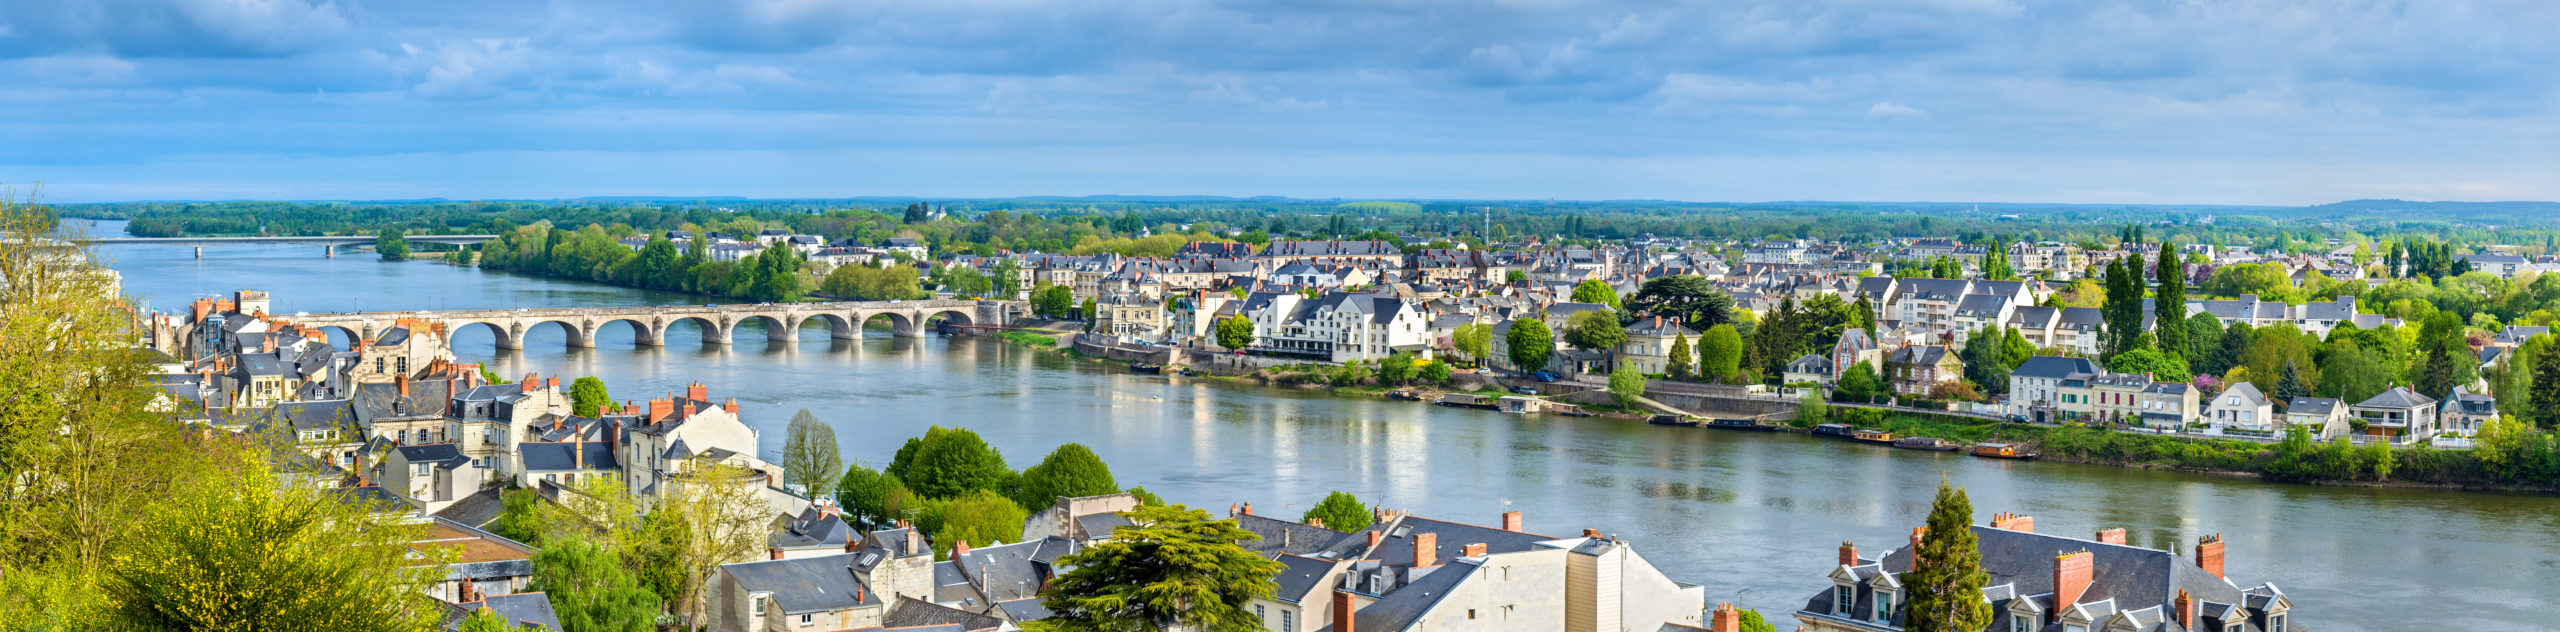 Luftaufnahme der Loire bei Saumur